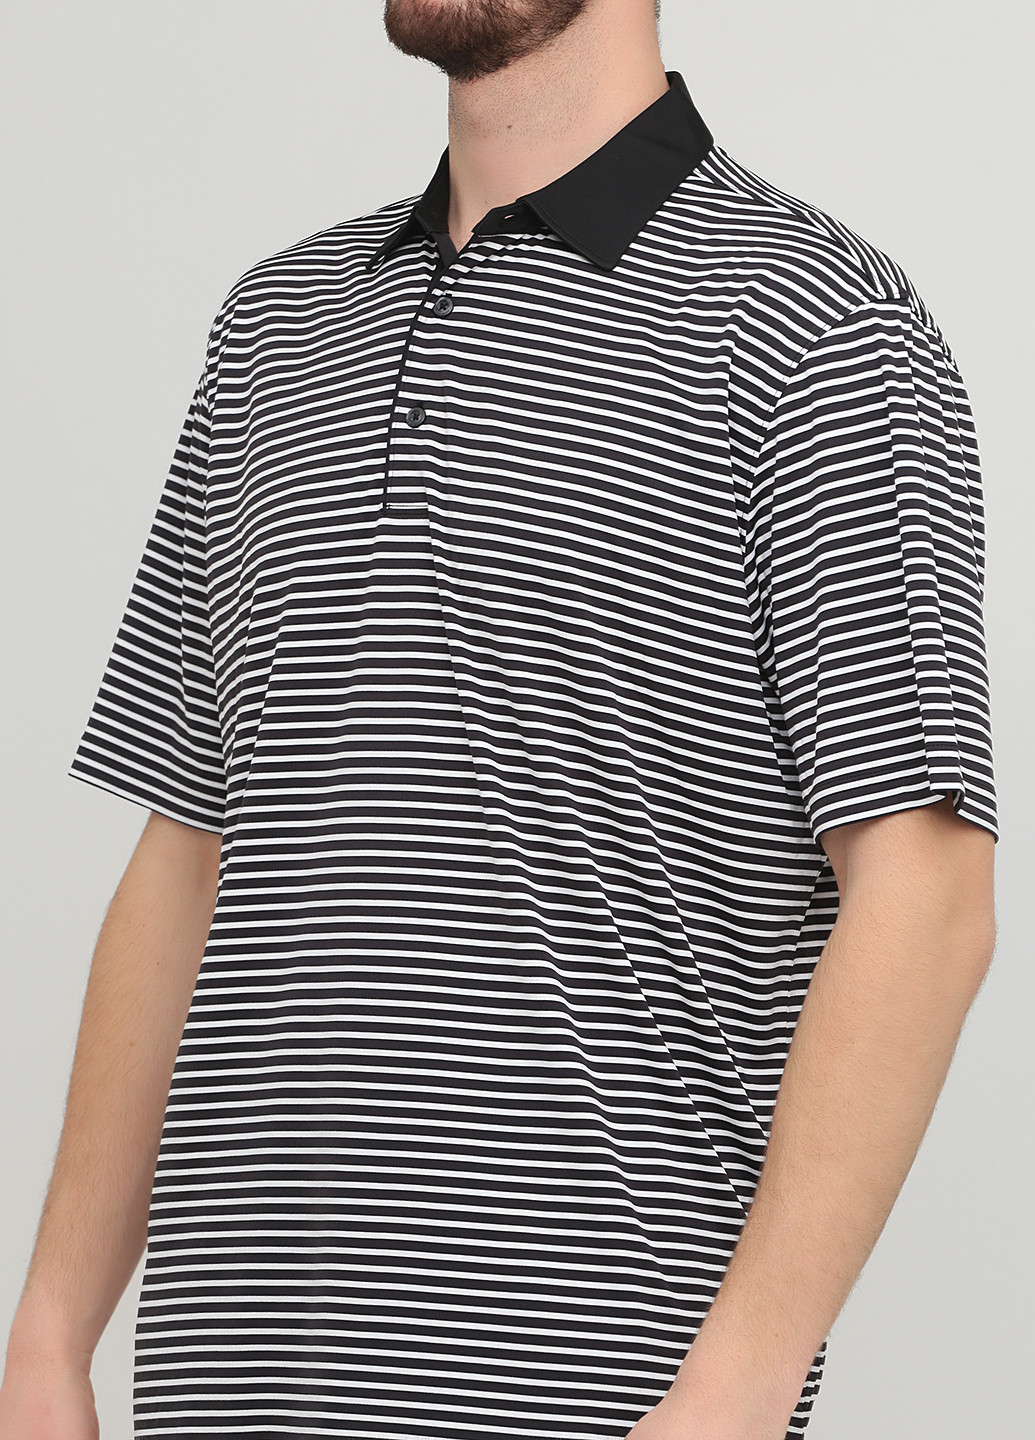 Черно-белая футболка-поло для мужчин Greg Norman в полоску